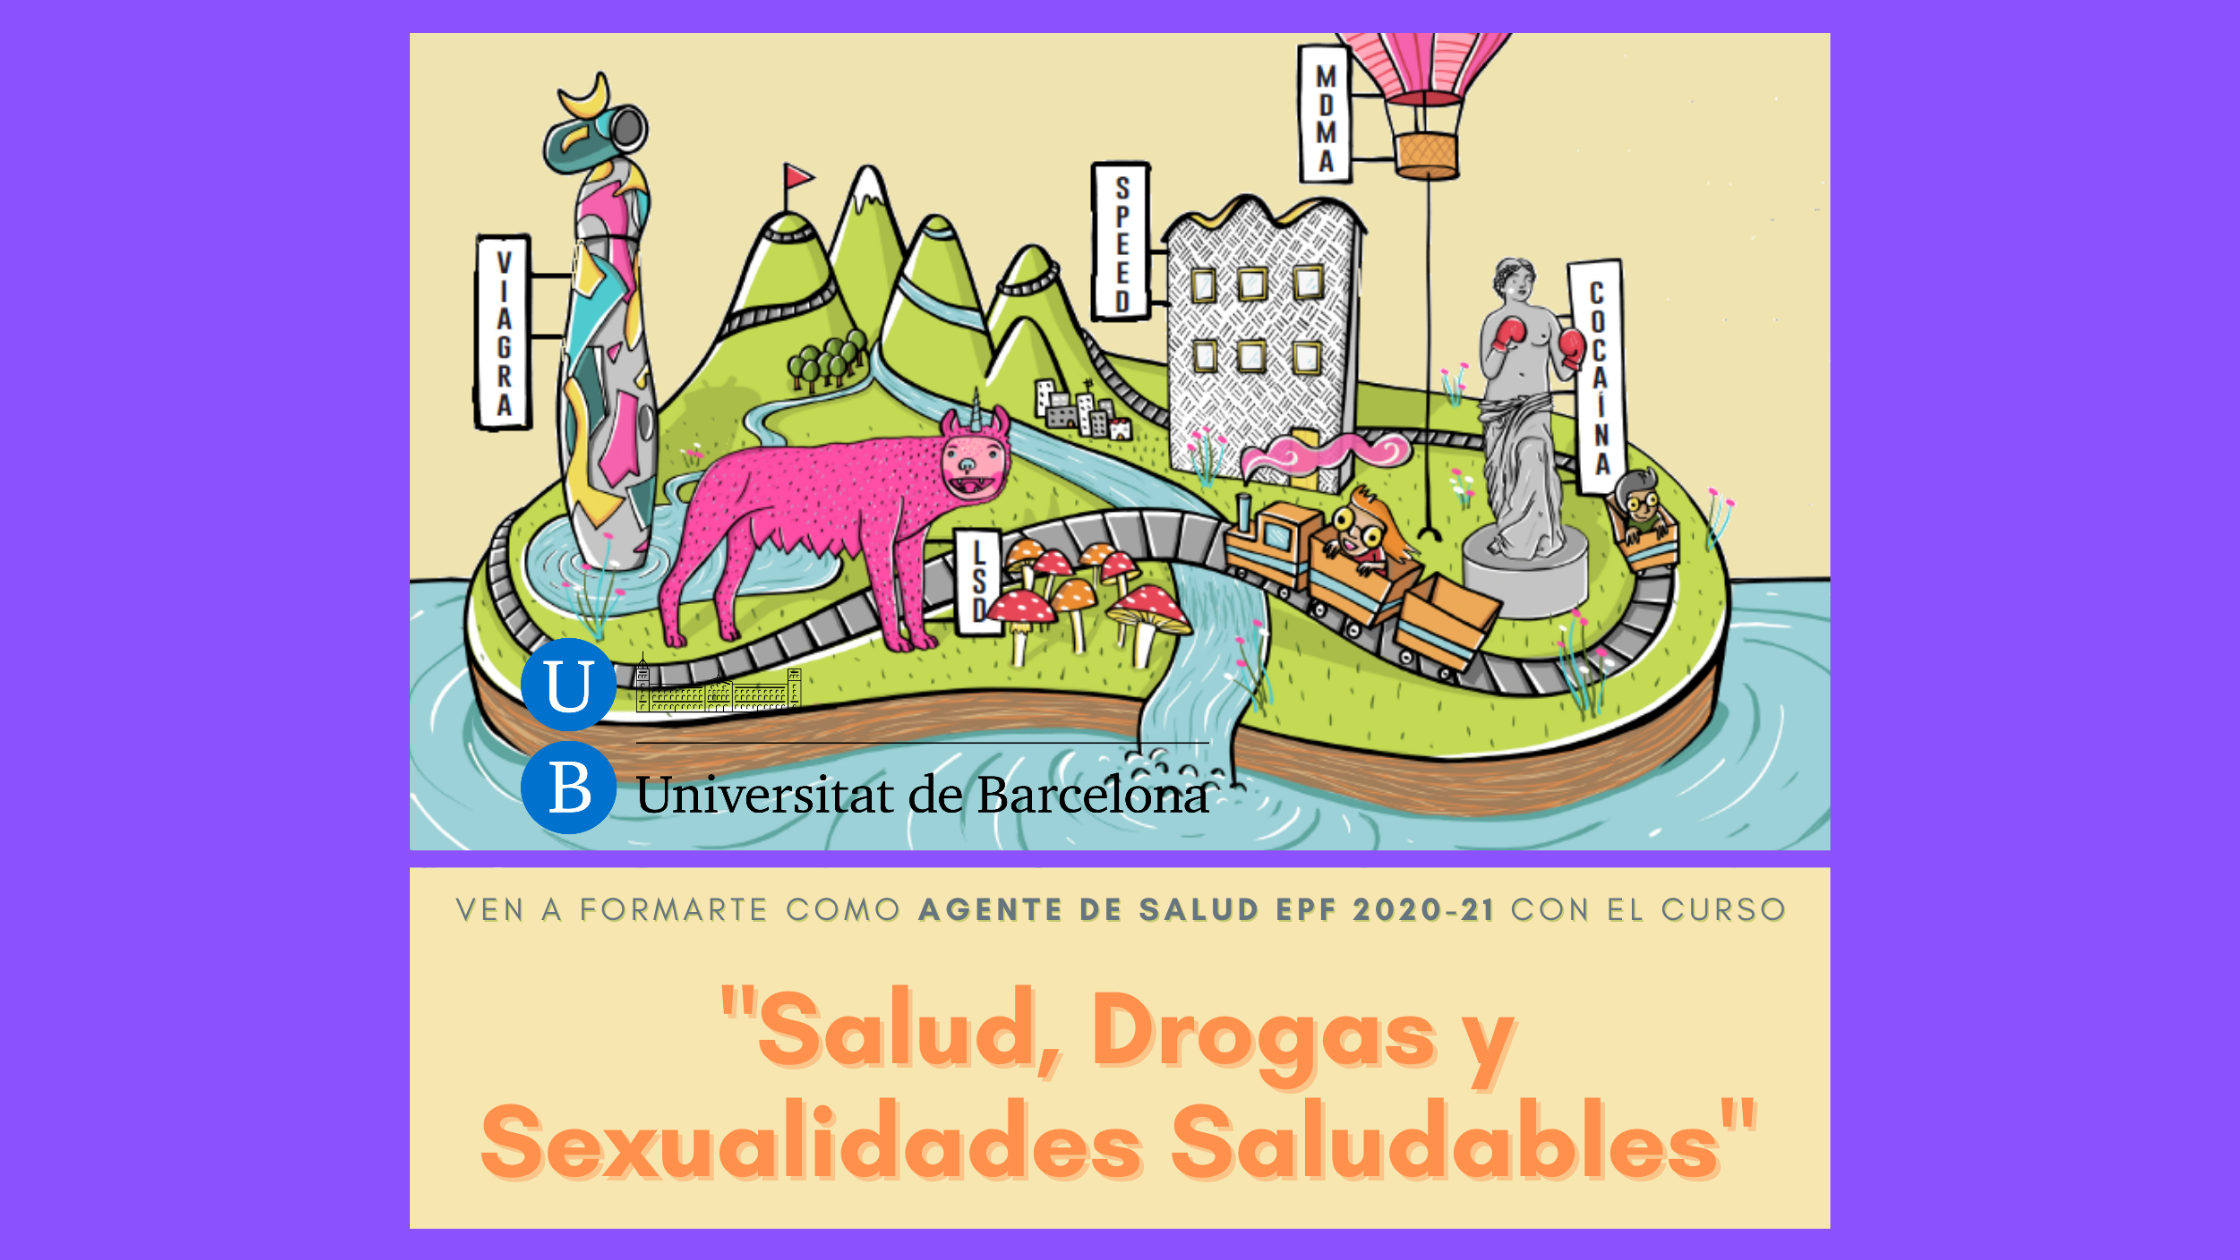 Nueva edición del curso EPF 2021 “Salud, Drogas y Sexualidad Saludable” en la UB-Campus Mundet